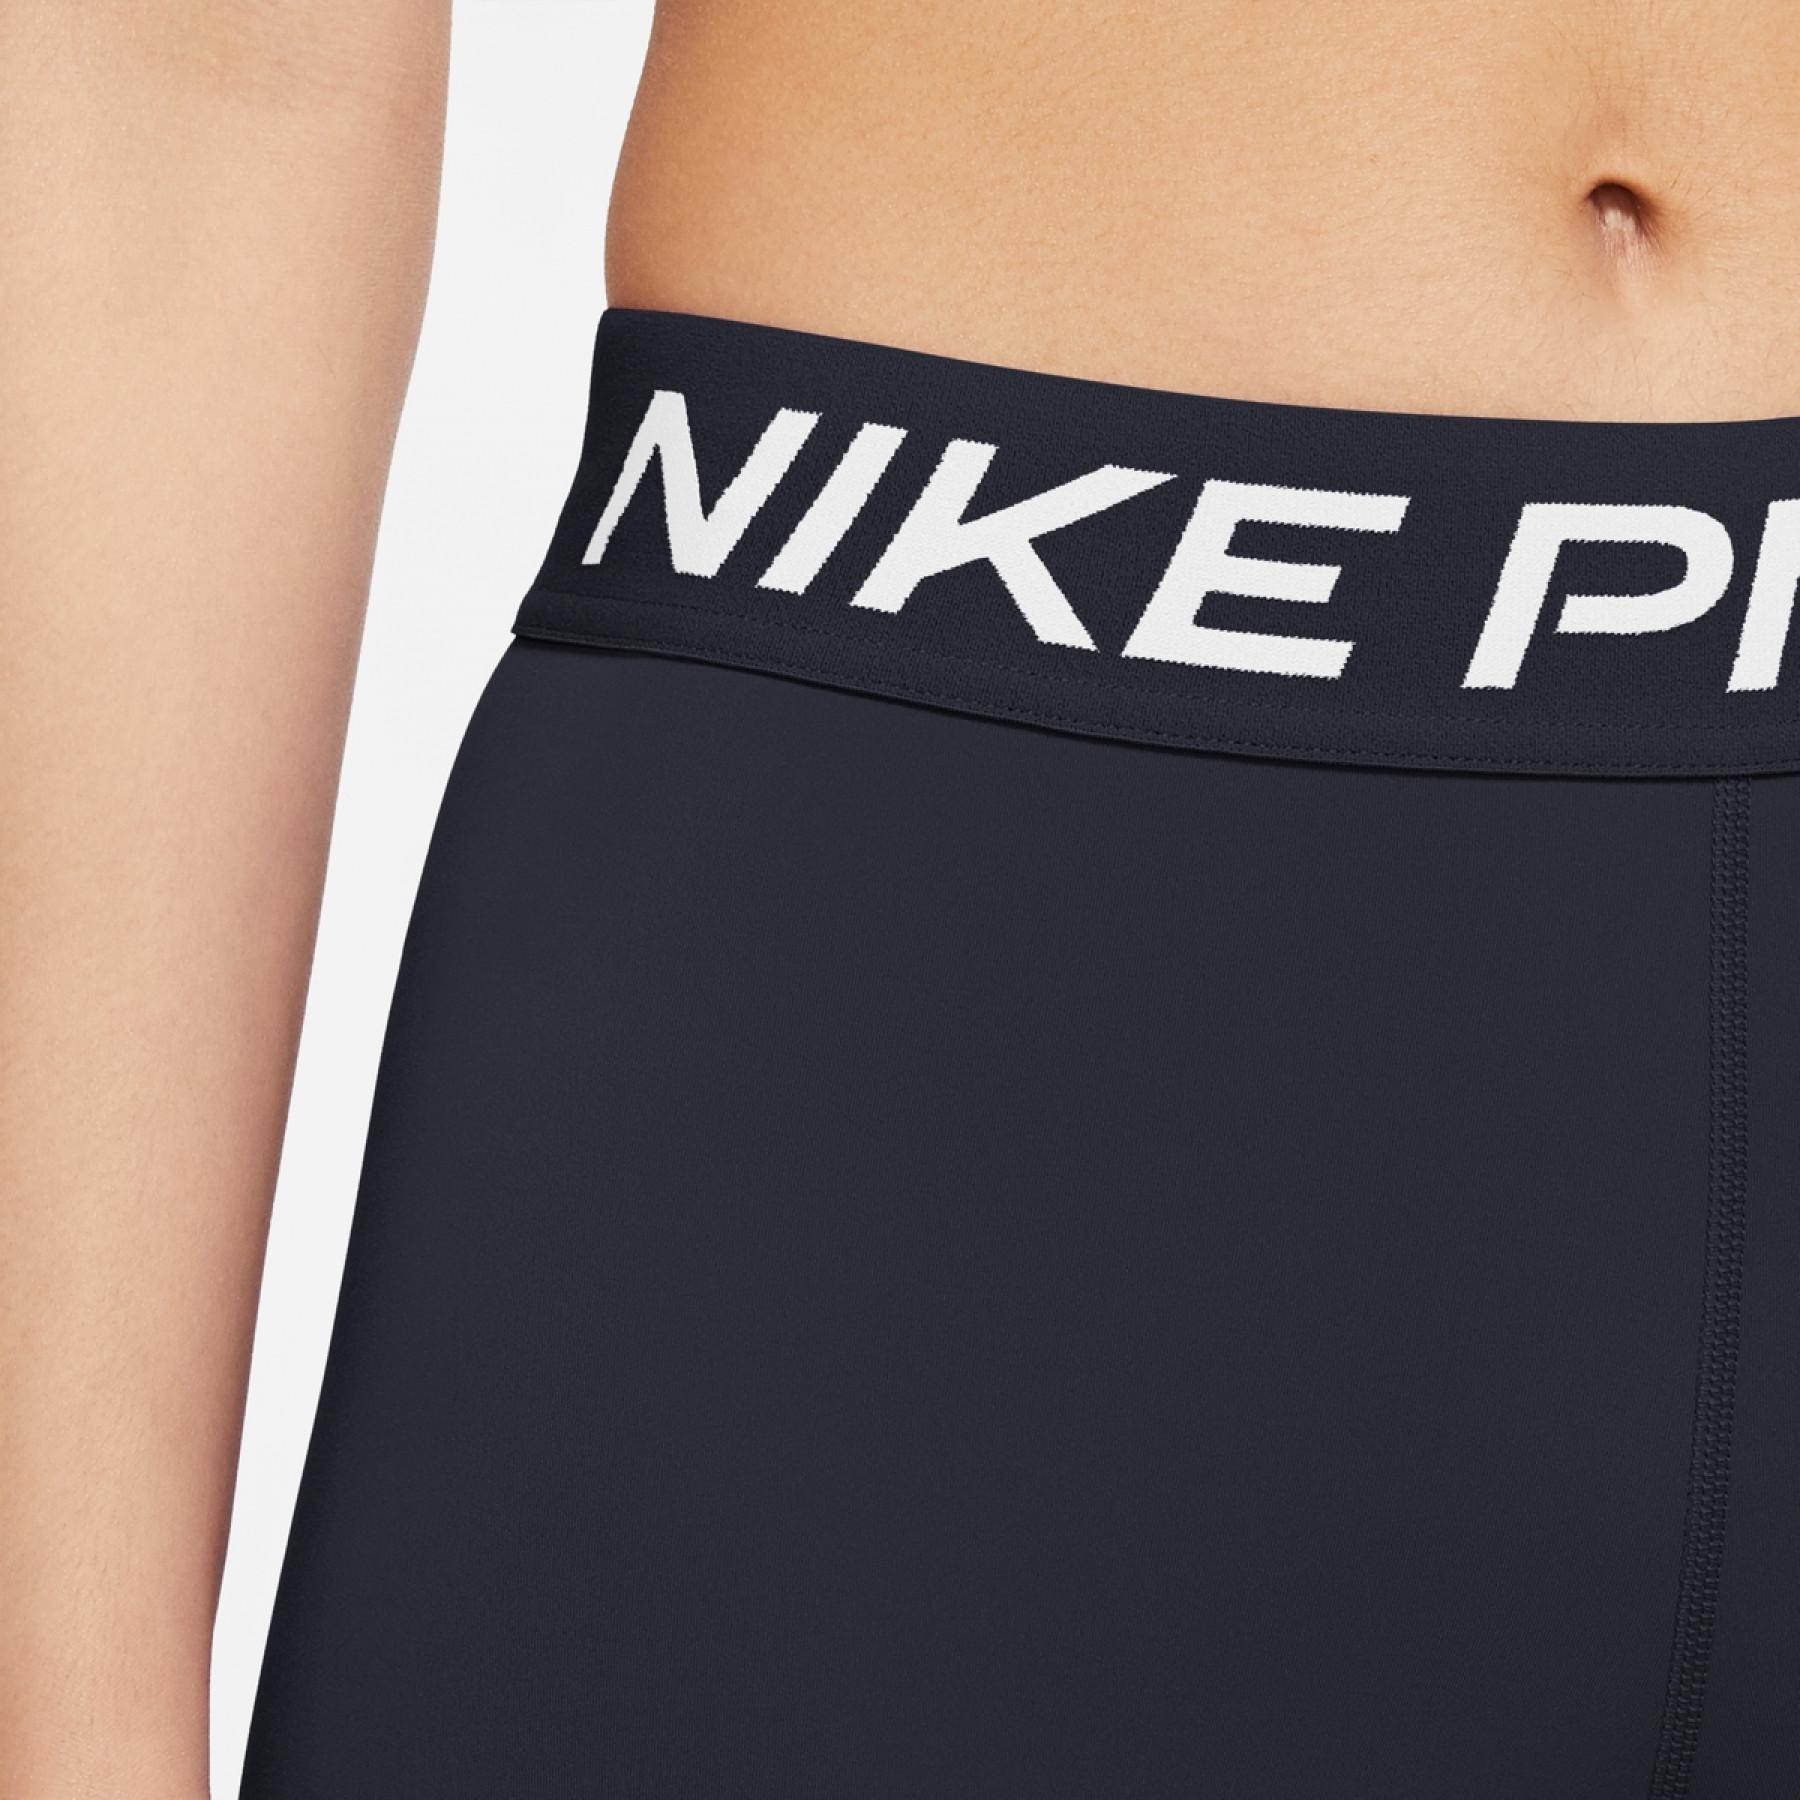 Women's Legging Nike Pro 365 - Nike - Brands - Volleyball wear